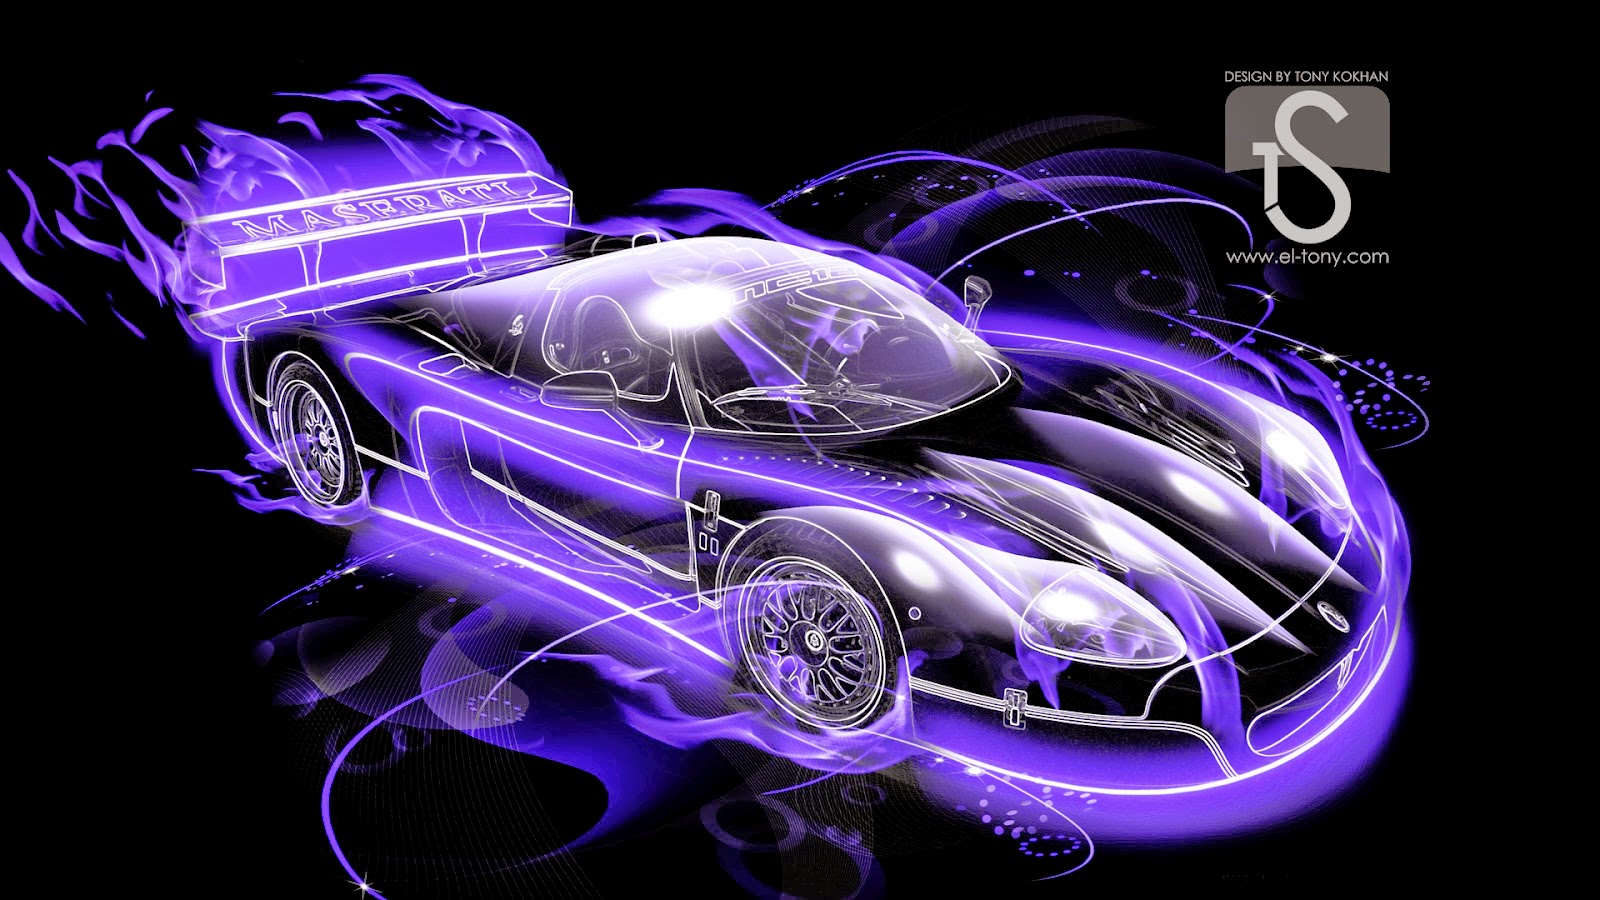 Thưởng thức vẻ đẹp của siêu xe cháy nổ với hình nền 3D đầy màu sắc và sống động. Hình ảnh của các chiếc xe cháy nổ được thiết kế độc đáo và ấn tượng, sẽ khiến bạn cảm thấy như đang trải qua một trận đua xe đầy mạo hiểm. Hãy xem ngay hình ảnh liên quan để được tận hưởng không gian sống động nhất!